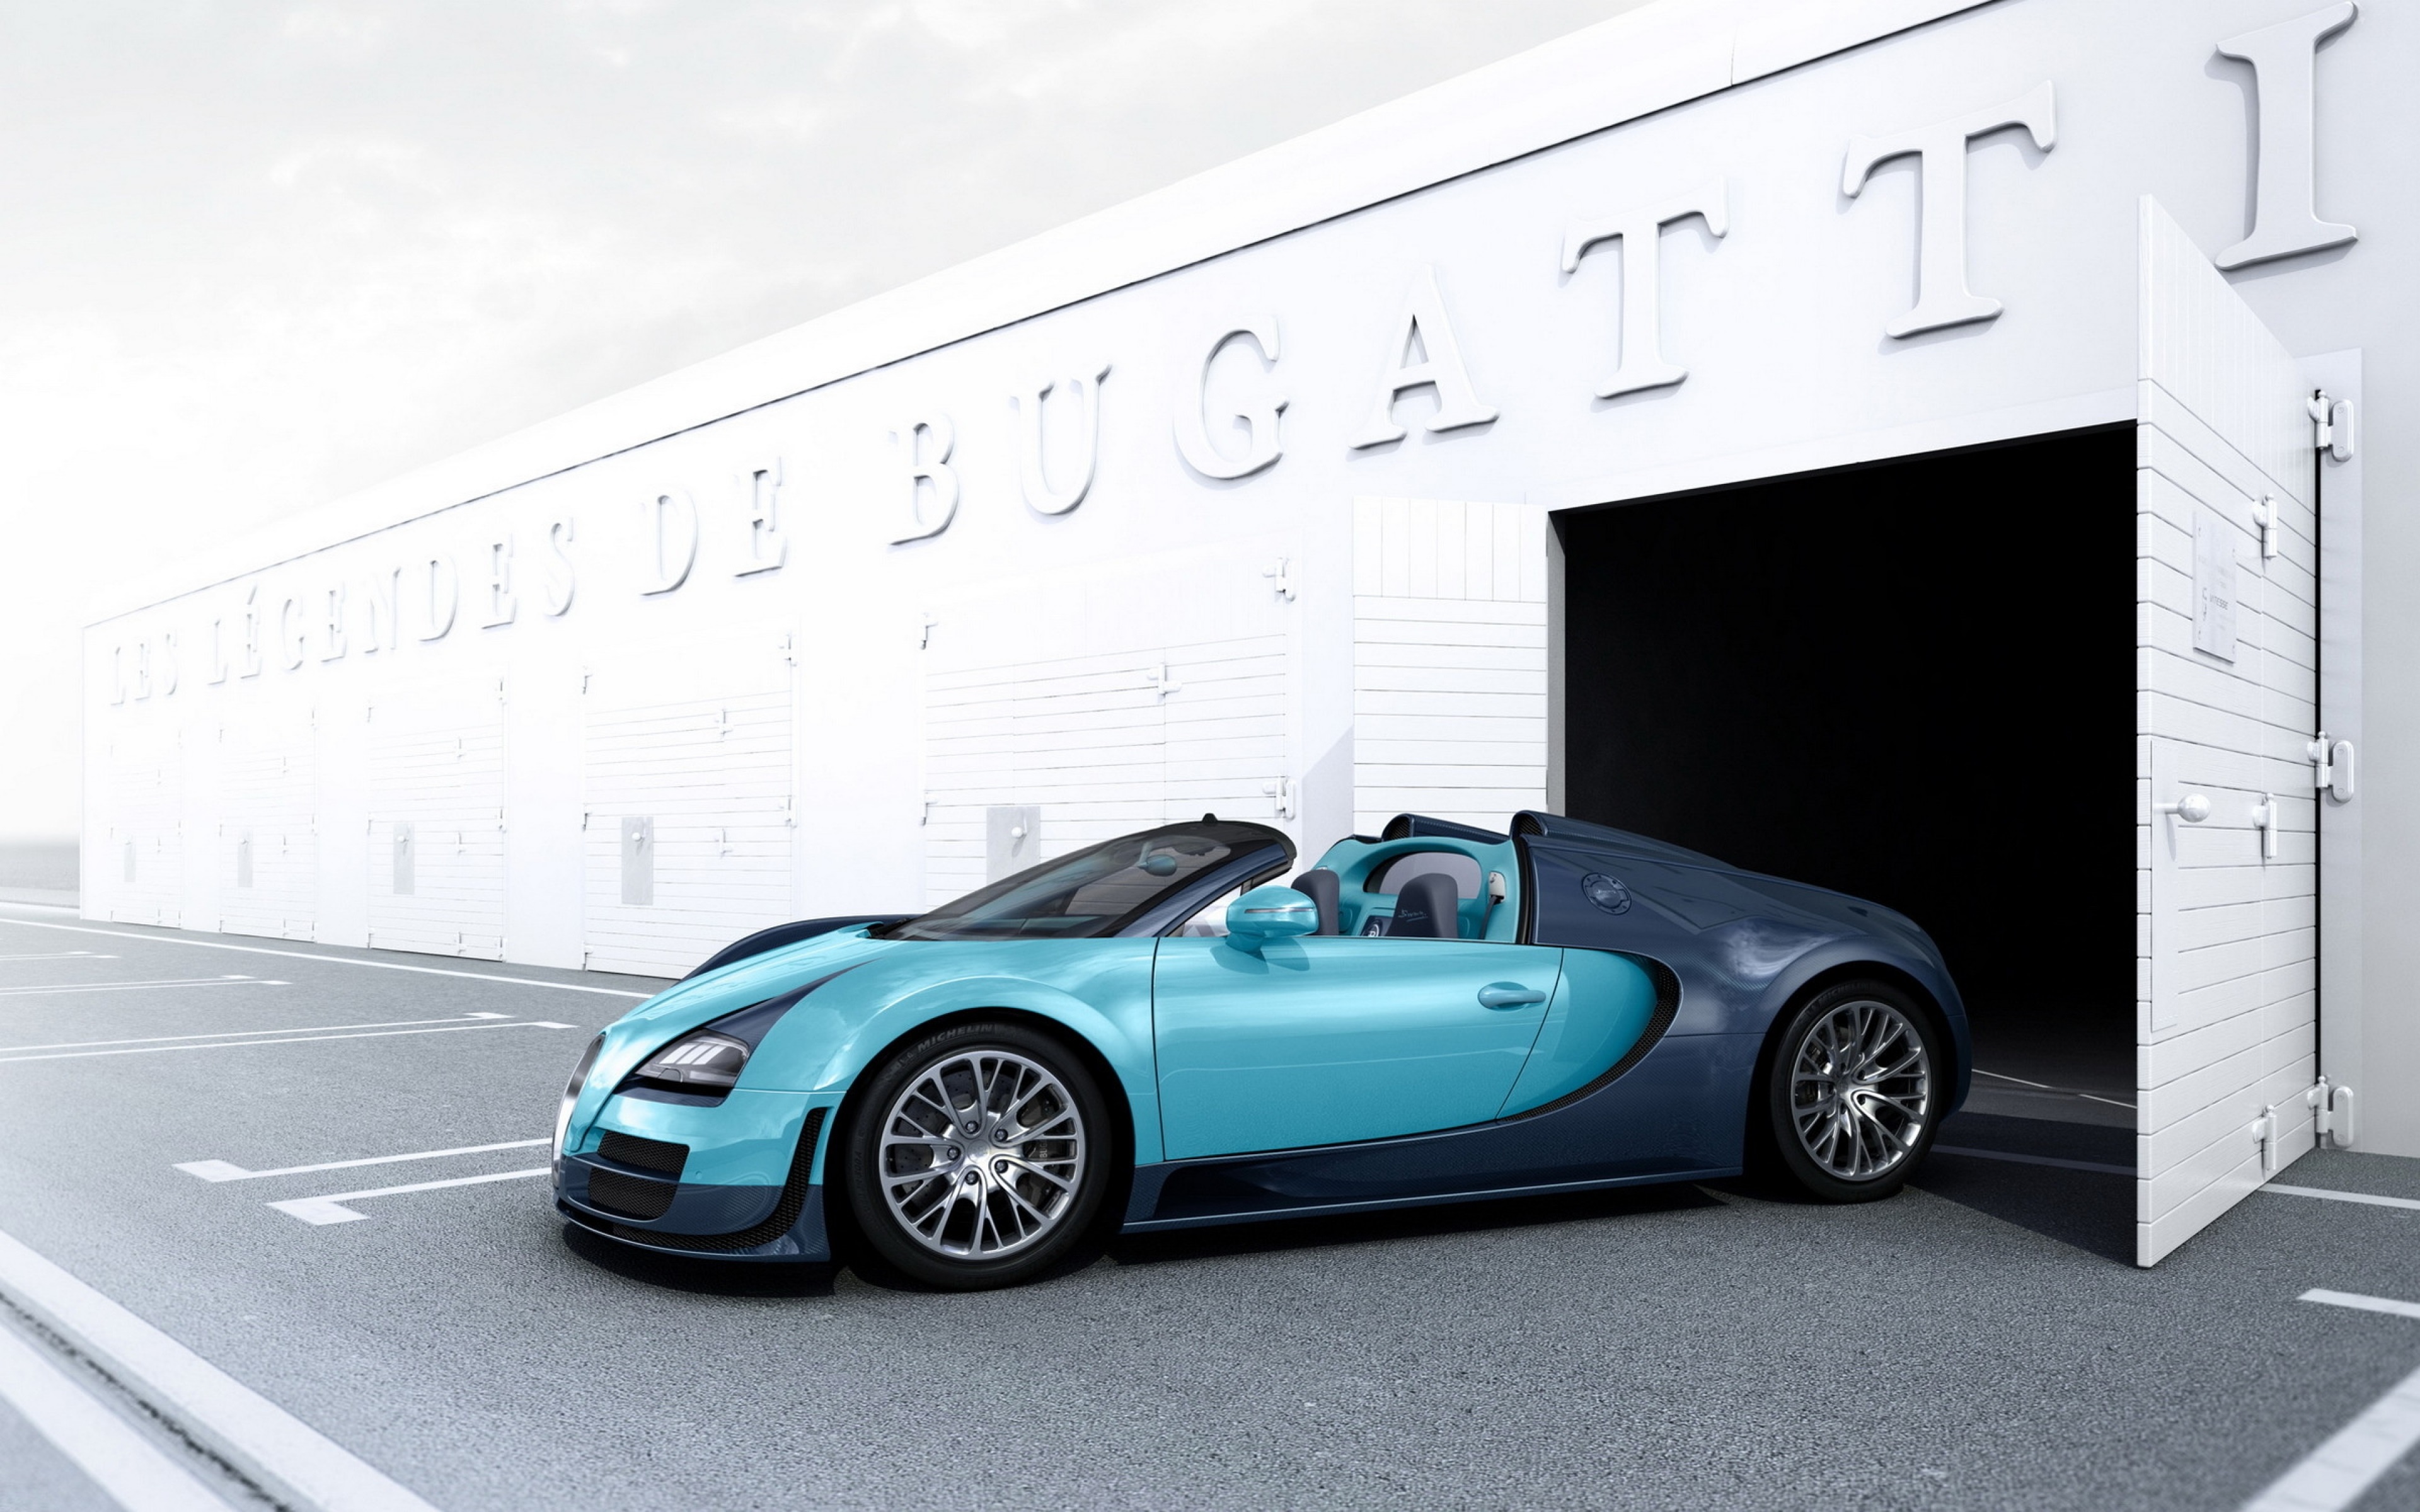 Epic Bugatti Wallpaper